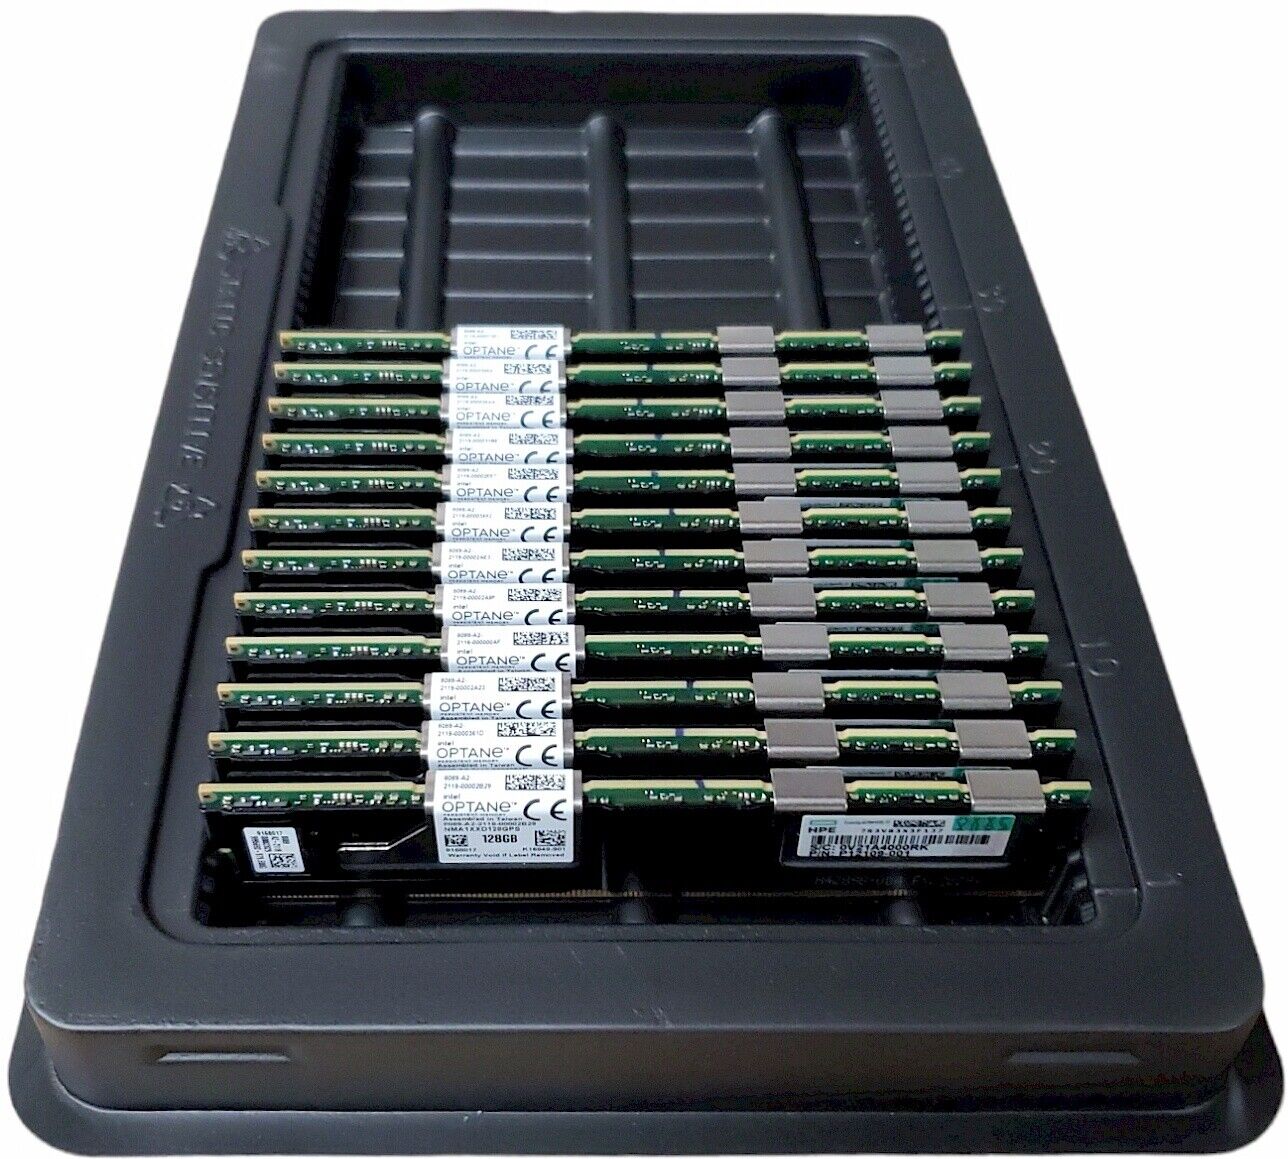 HPE Intel Optane 128GB Persistent Memory 100 Series NVDIMM P12109-001 844071-001